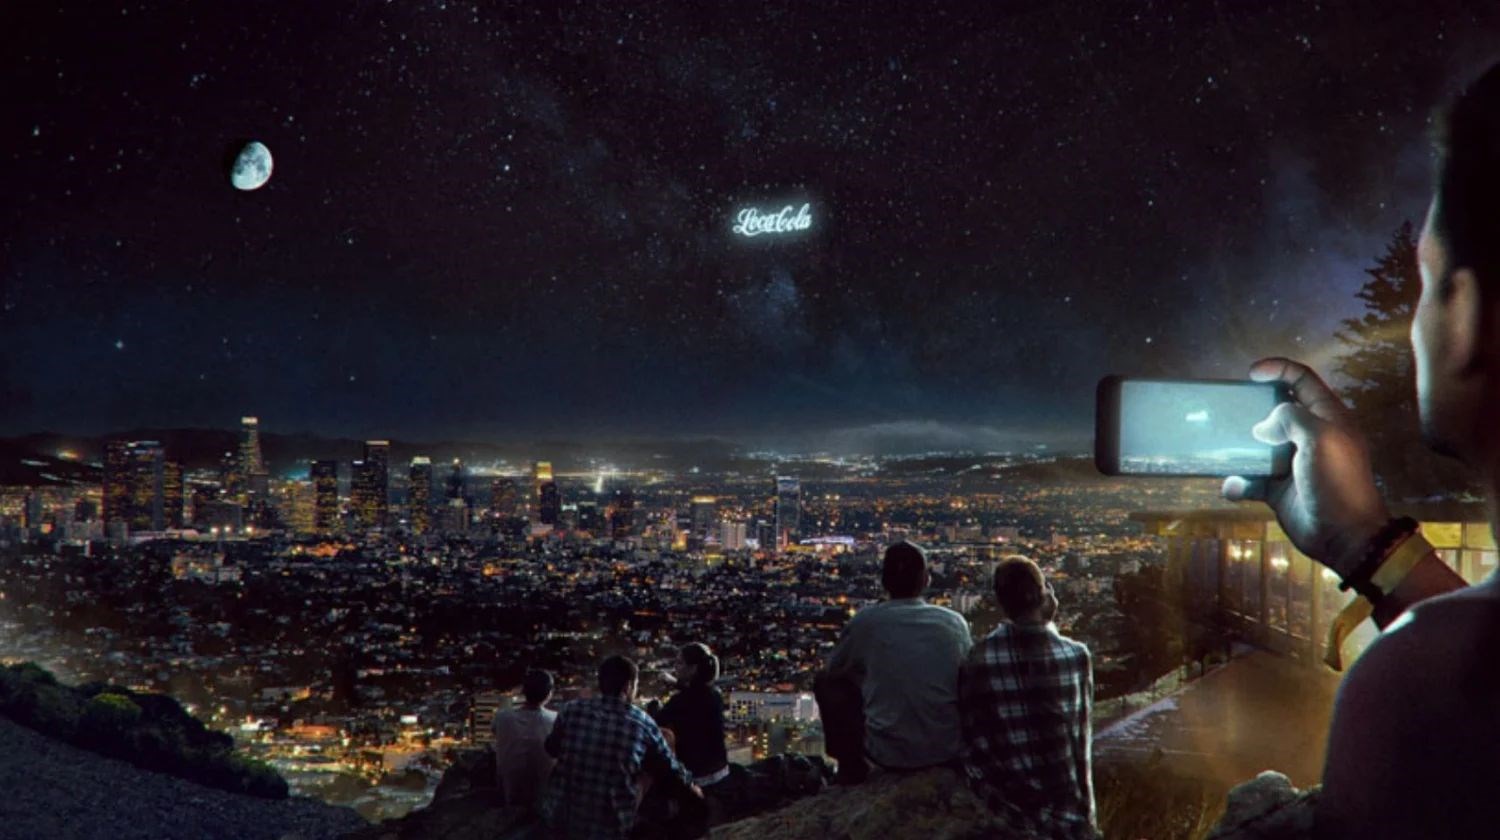 Reklamlar artık uzaydan gösterilmeye başlanacak